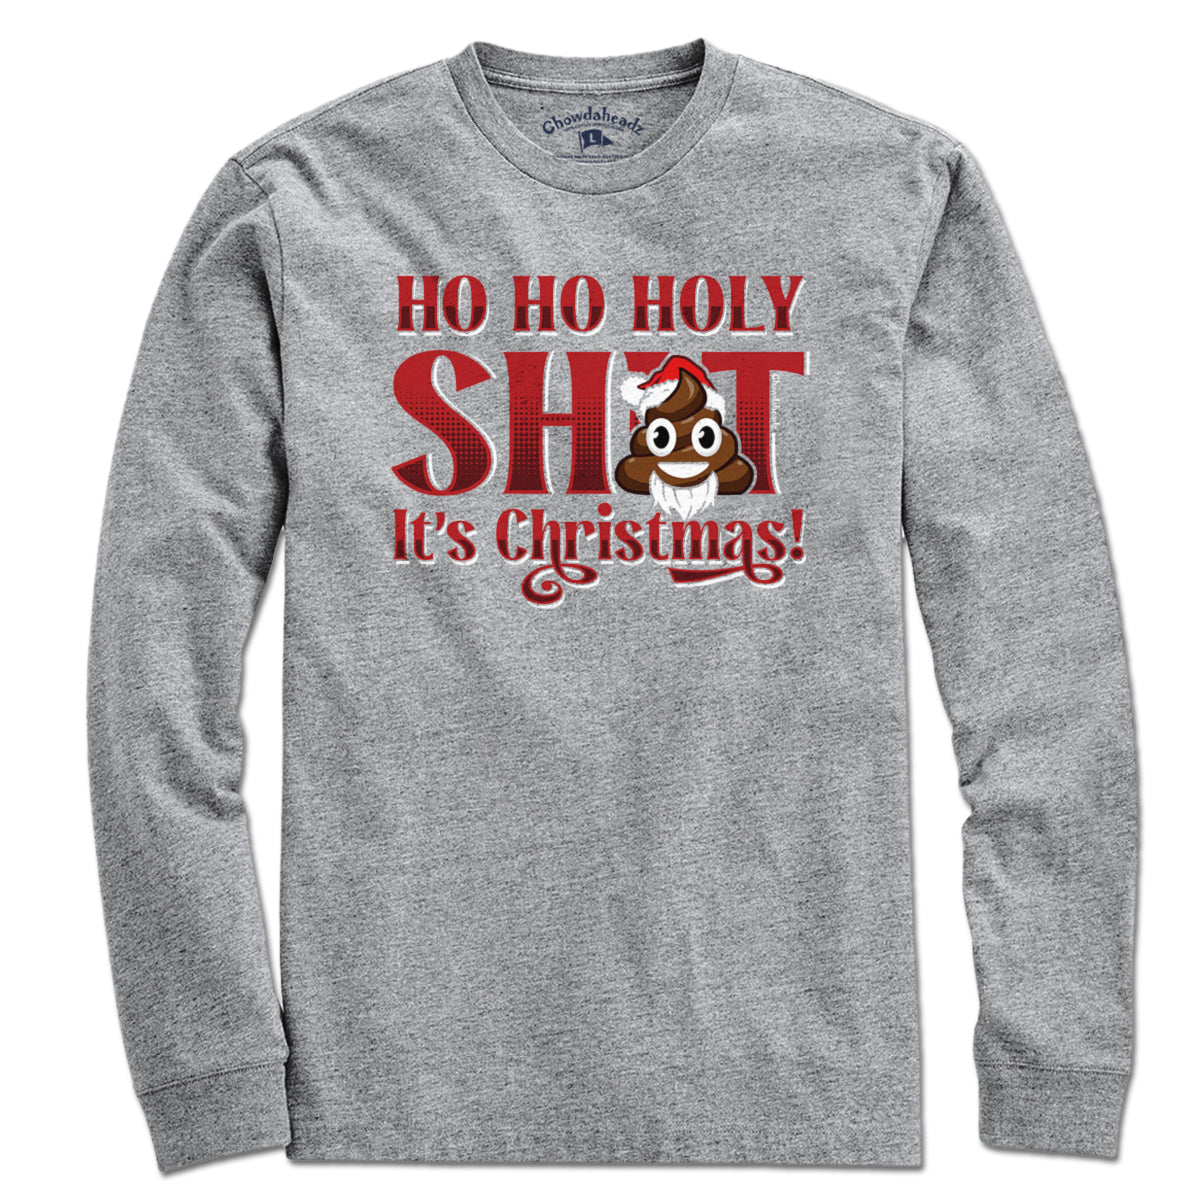 Ho Ho Holy S--t It's Christmas T-Shirt - Chowdaheadz